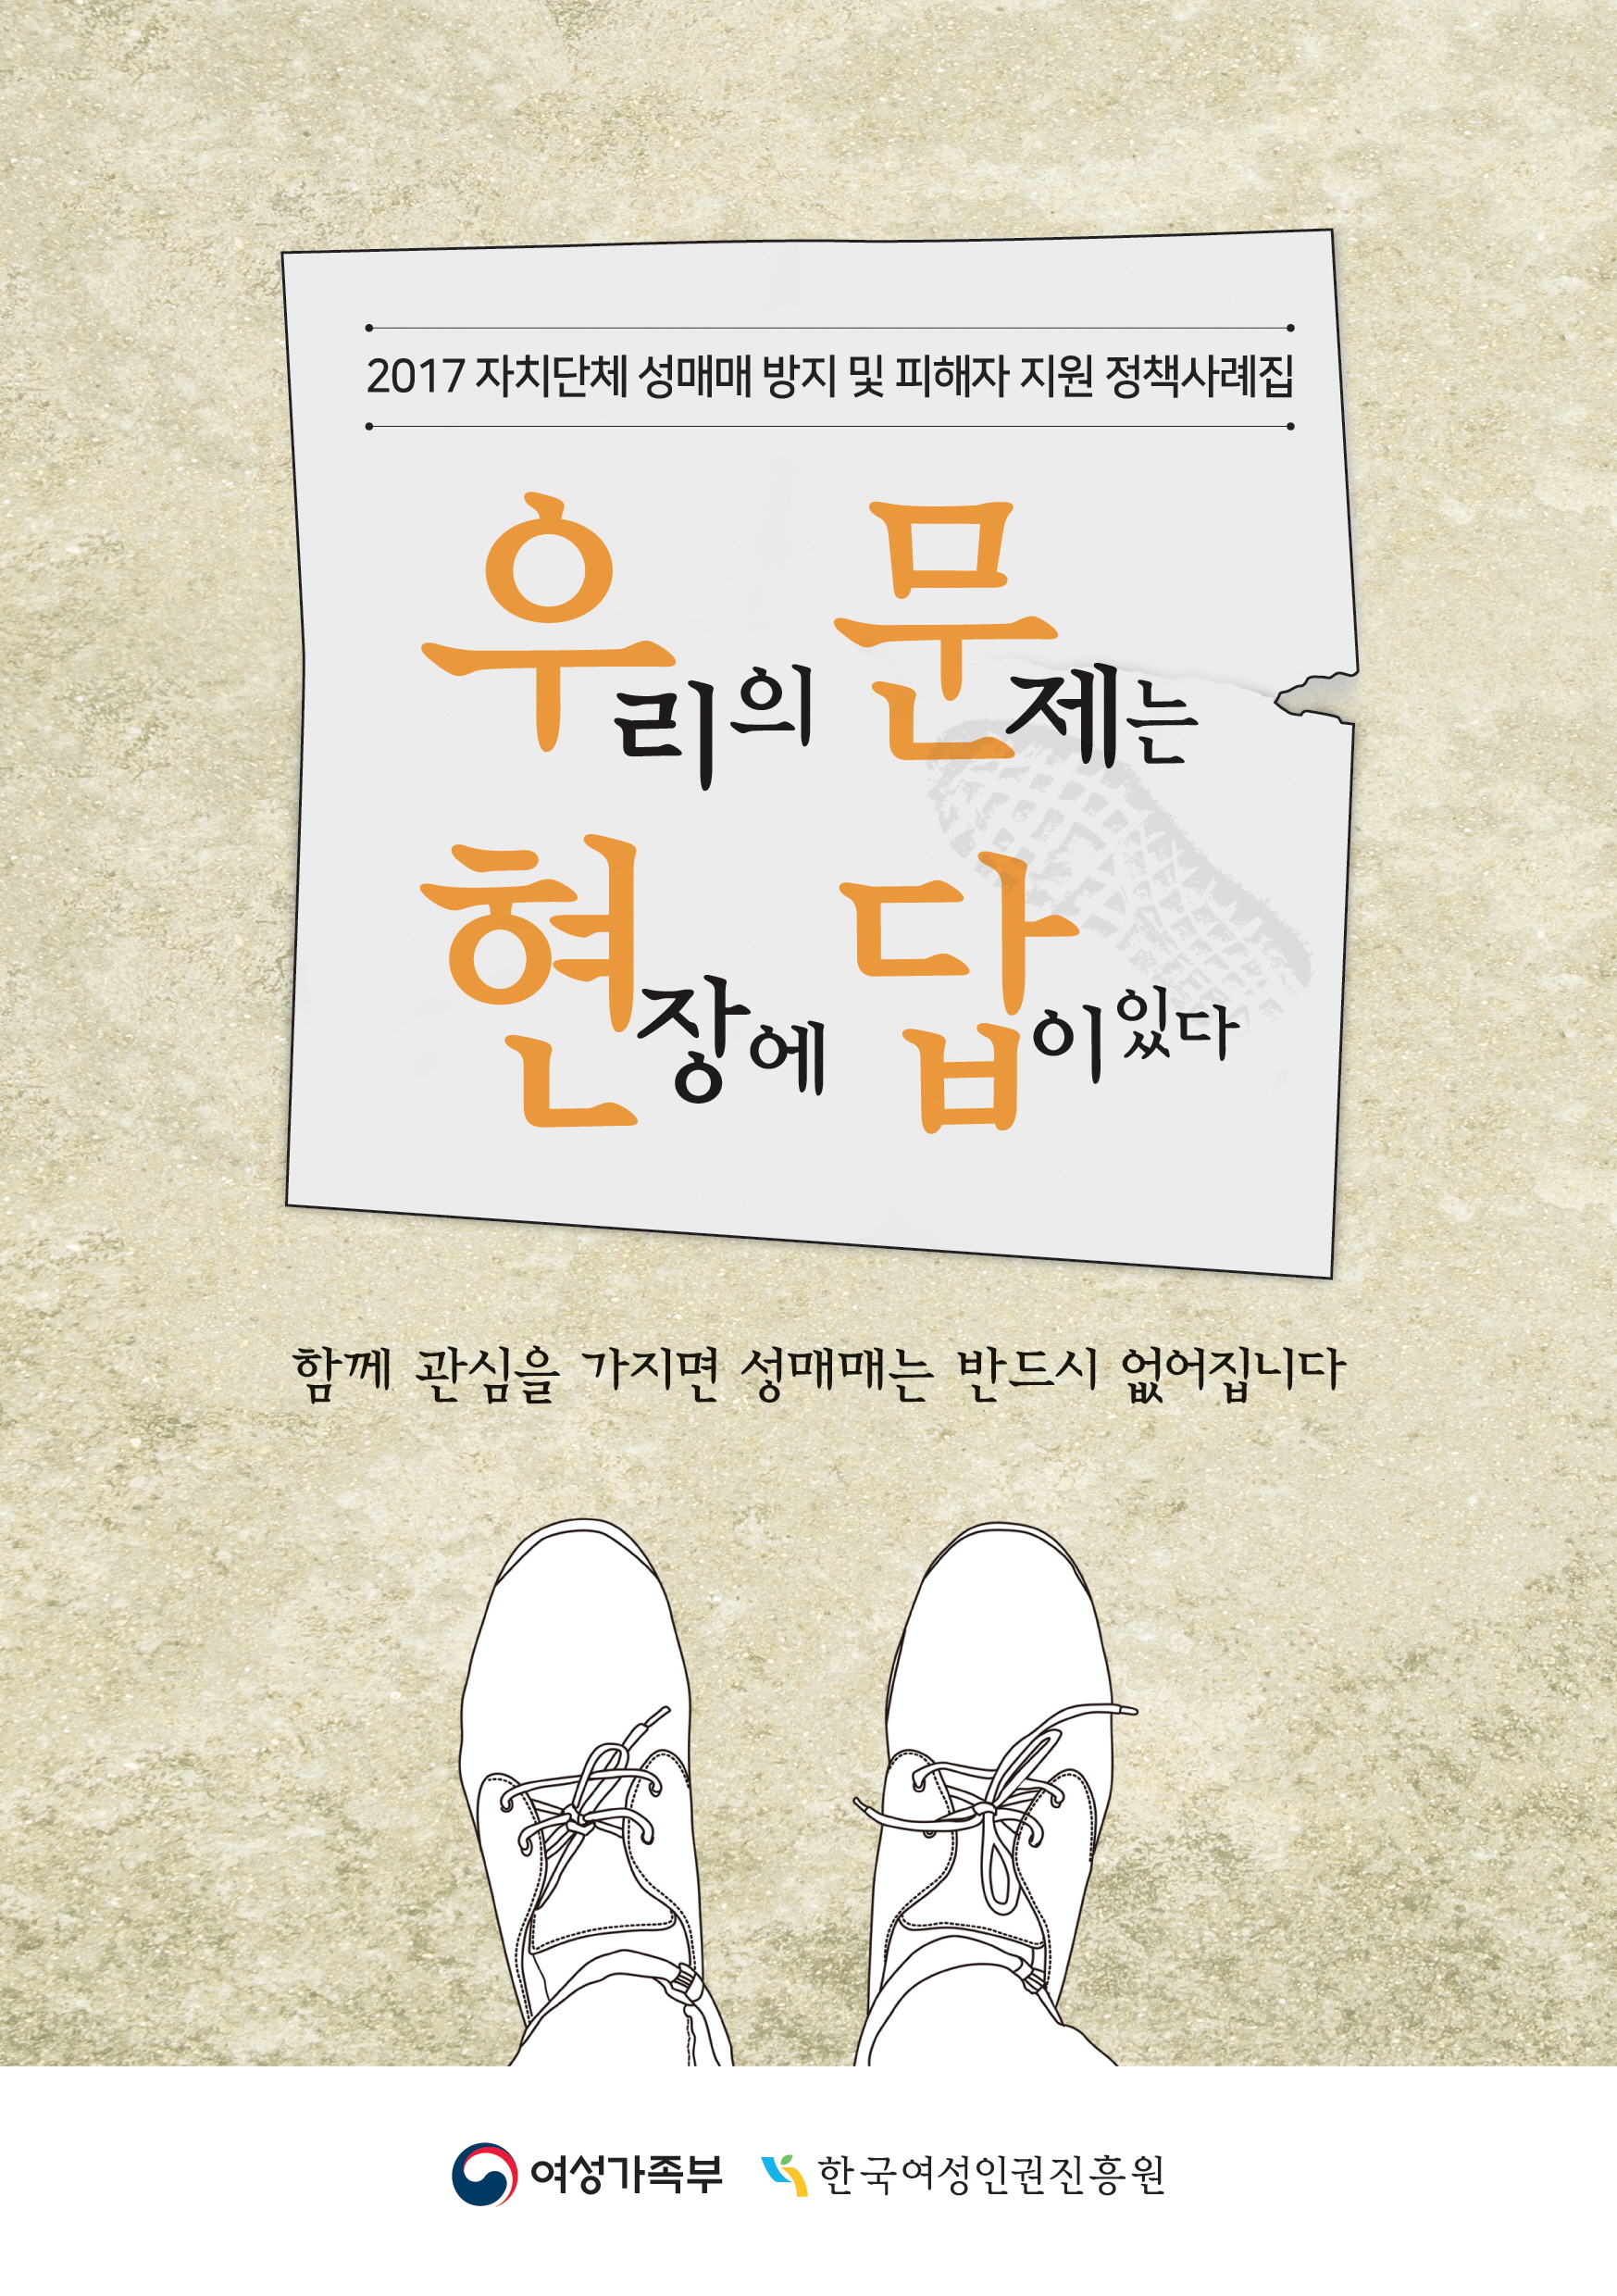 2017 자치단체 성매매 방지 및 피해자 지원 정책사례집 「우문현답」